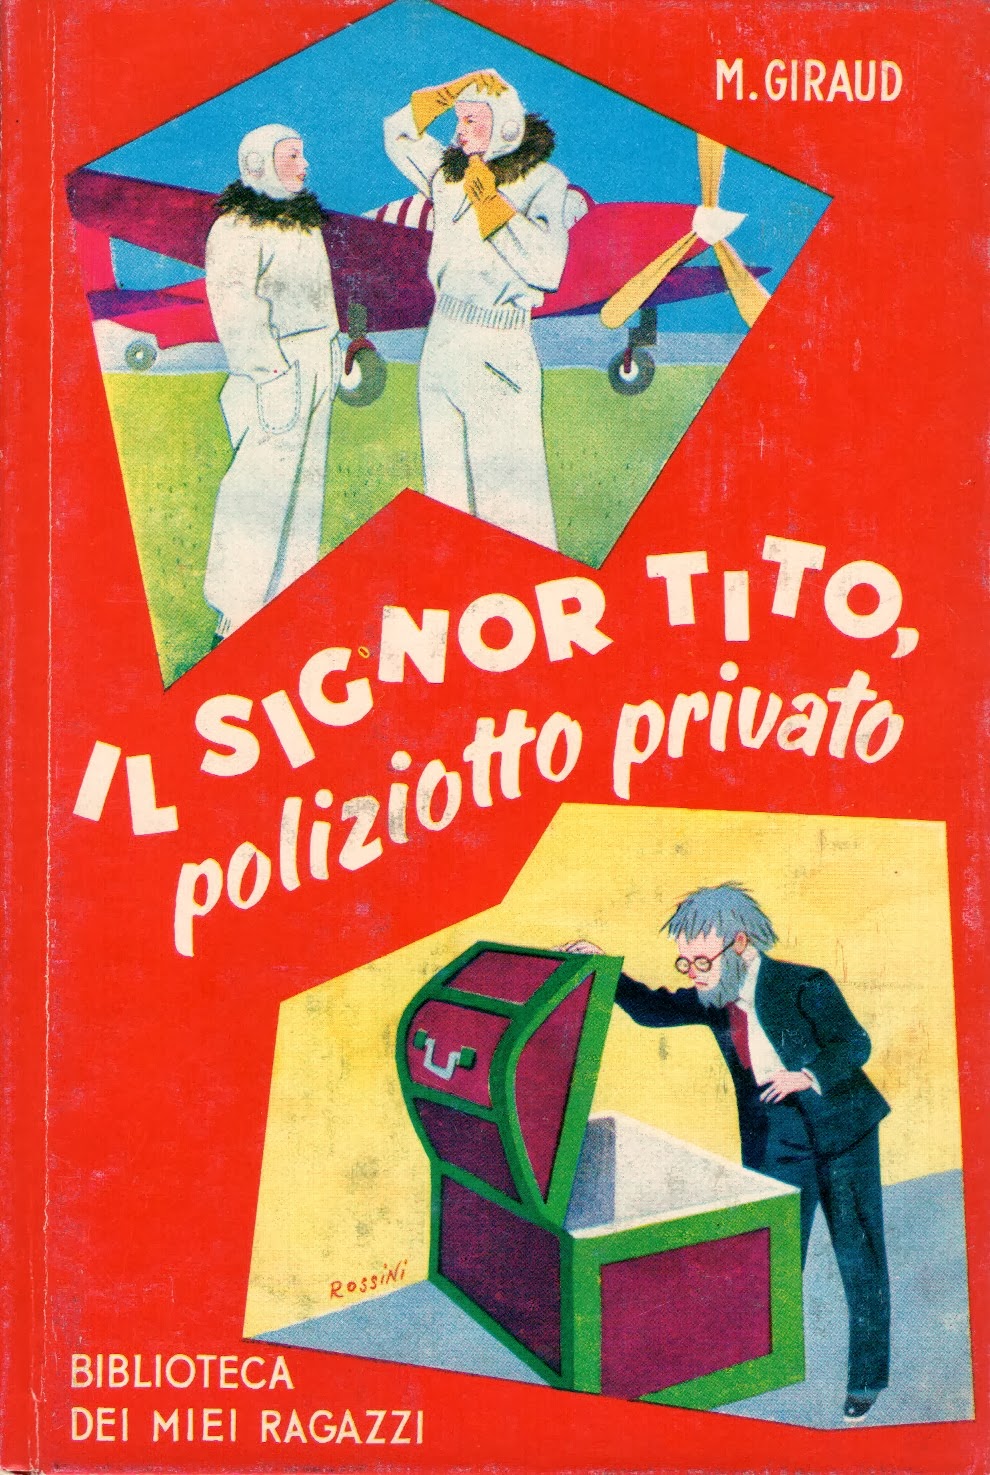 Il libro eterno La biblioteca dei miei ragazzi Il Signor Tito, poliziotto privato di Mad. H